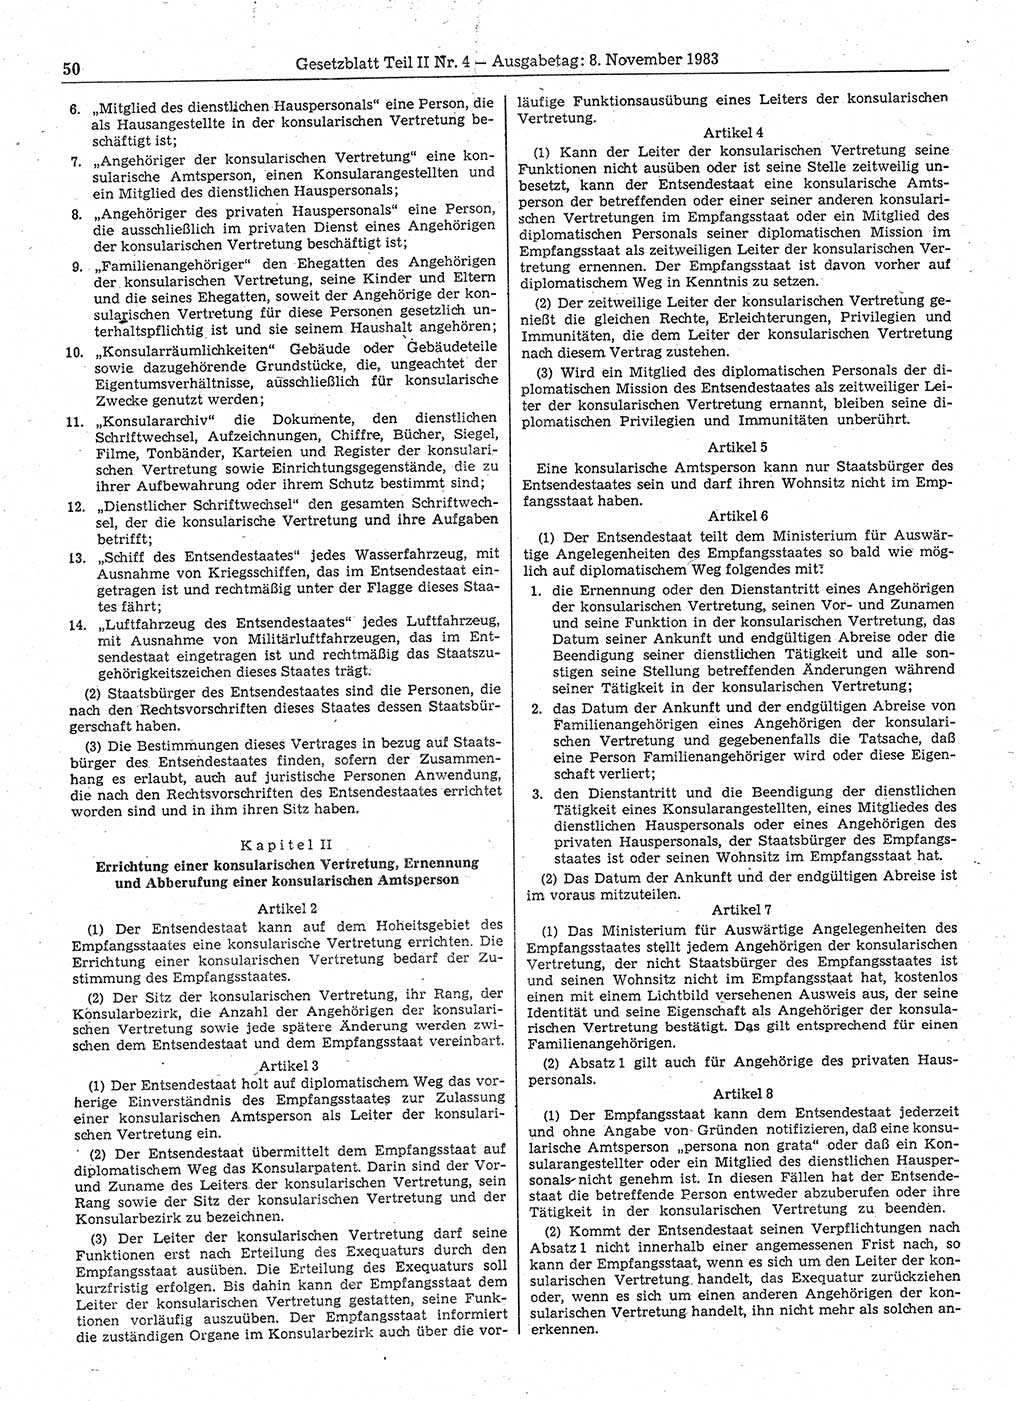 Gesetzblatt (GBl.) der Deutschen Demokratischen Republik (DDR) Teil ⅠⅠ 1983, Seite 50 (GBl. DDR ⅠⅠ 1983, S. 50)